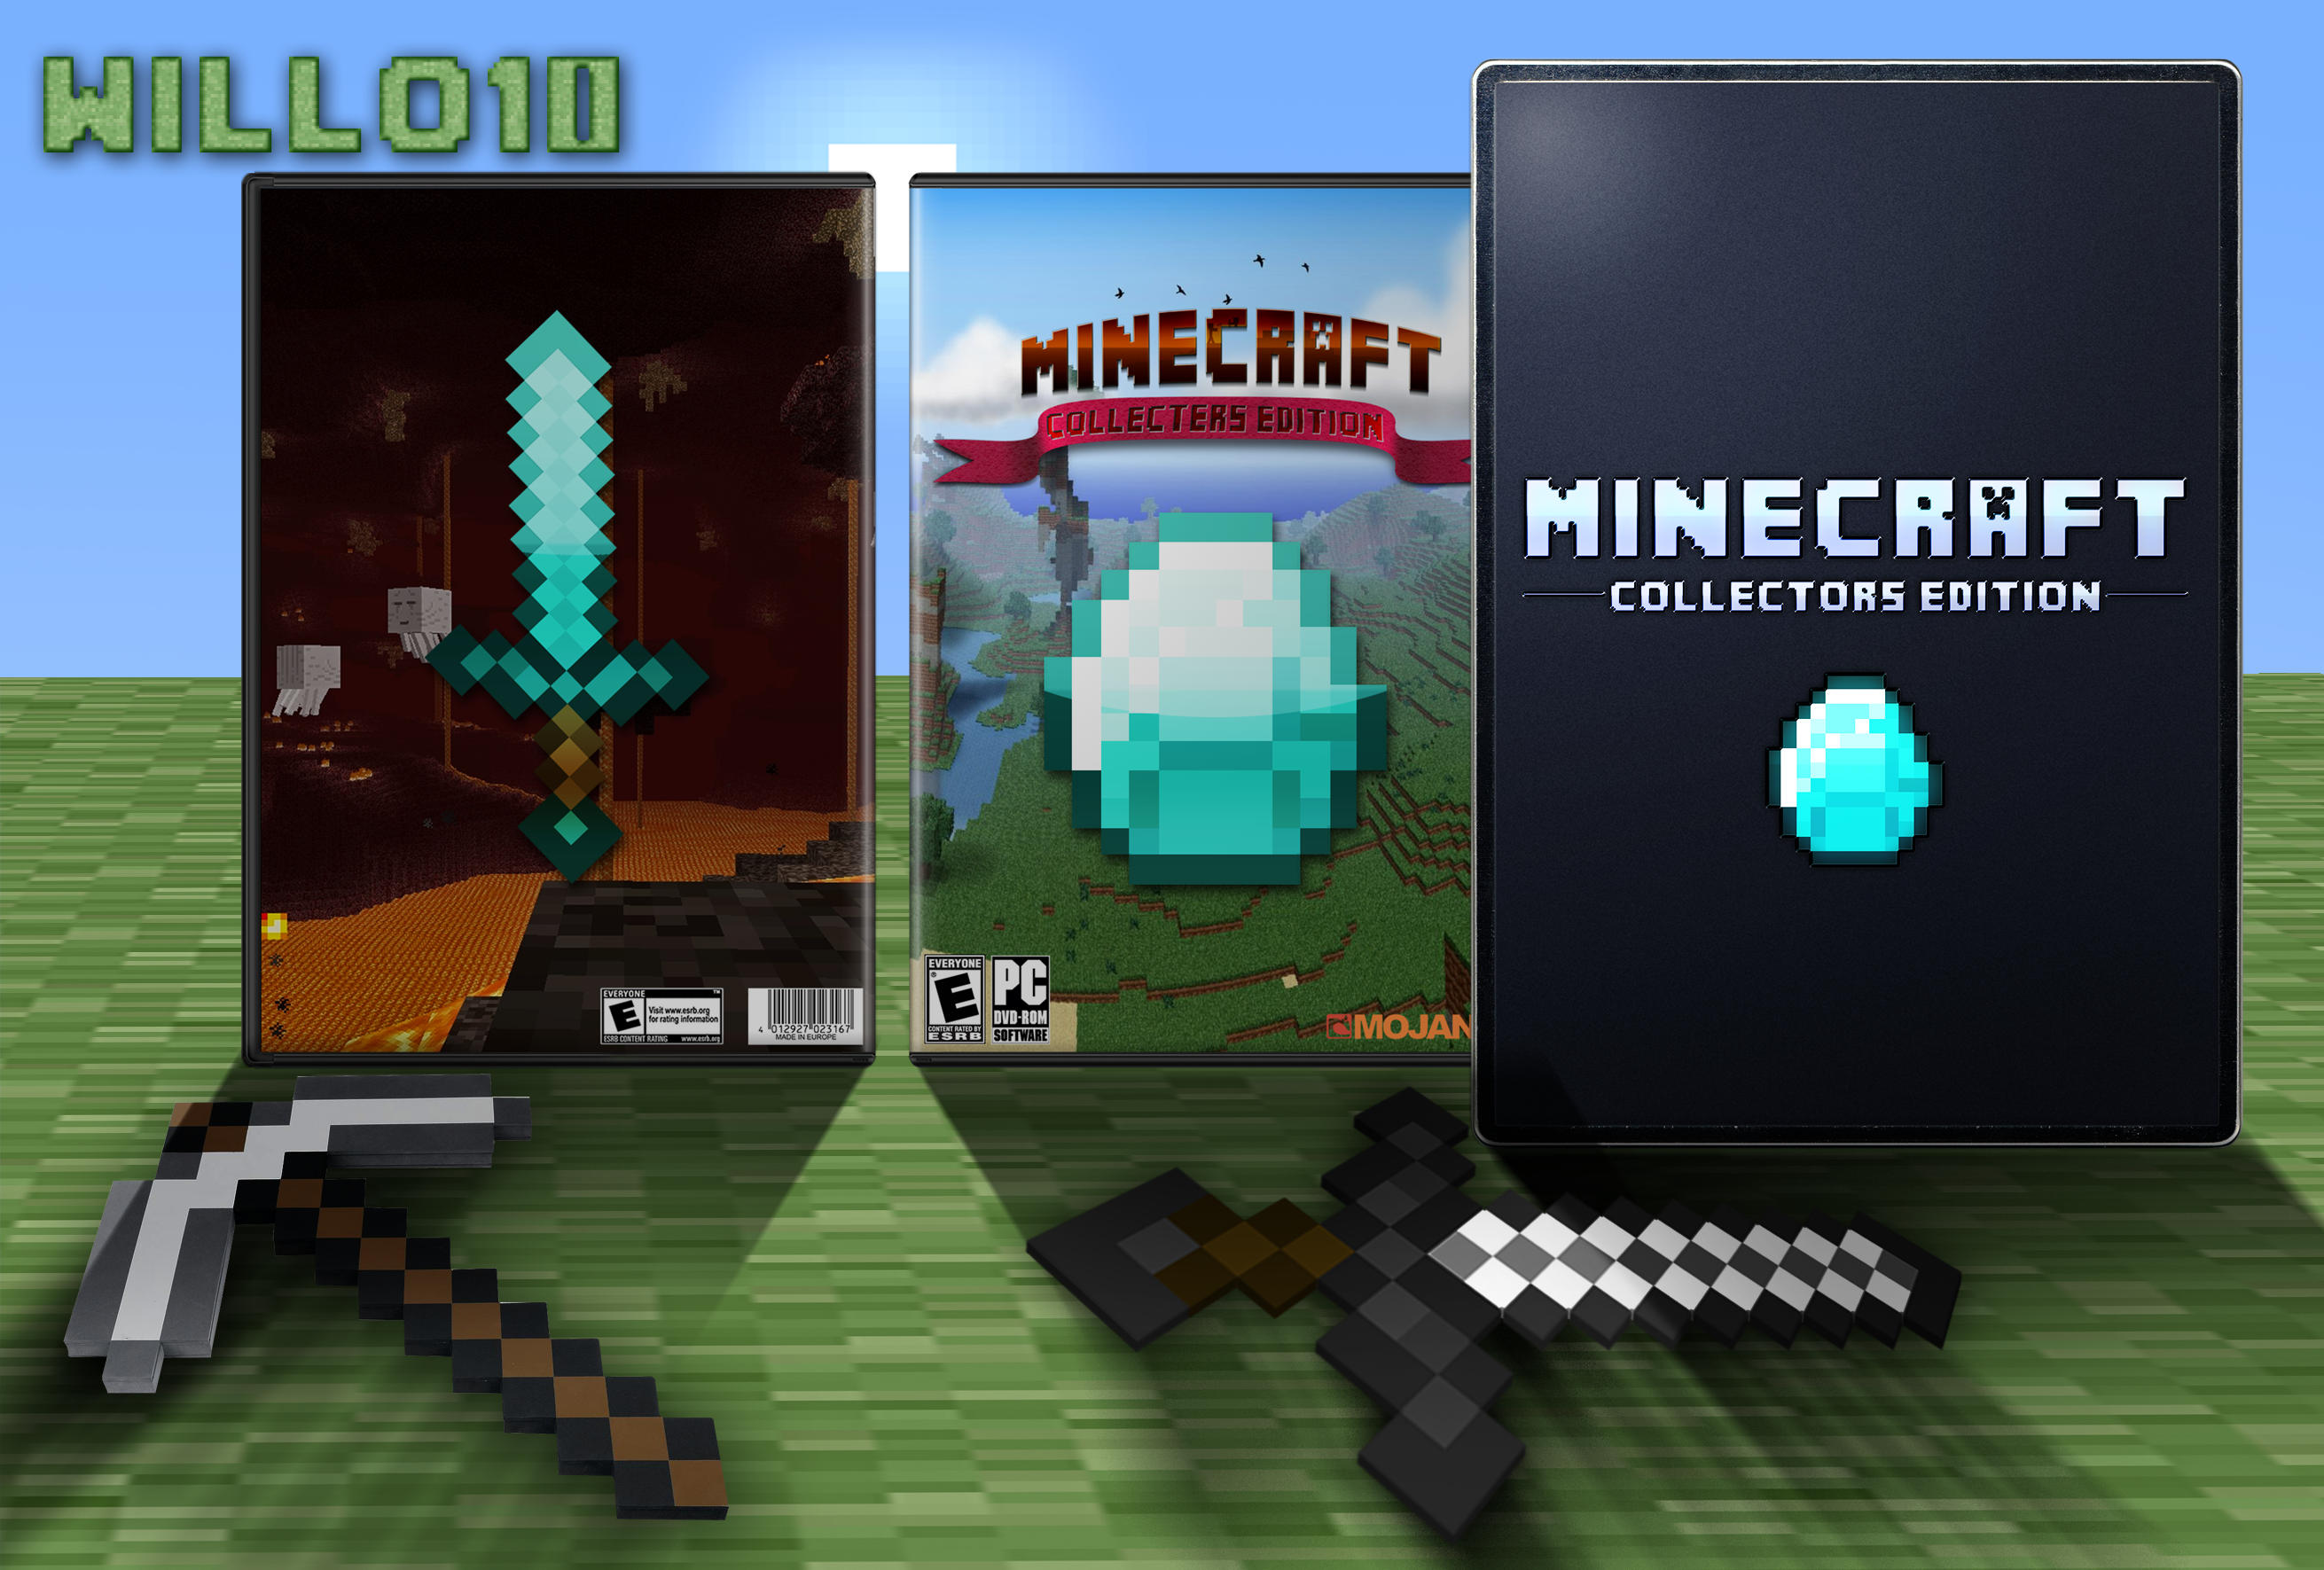 Minecraft: Collectors Edition box cover